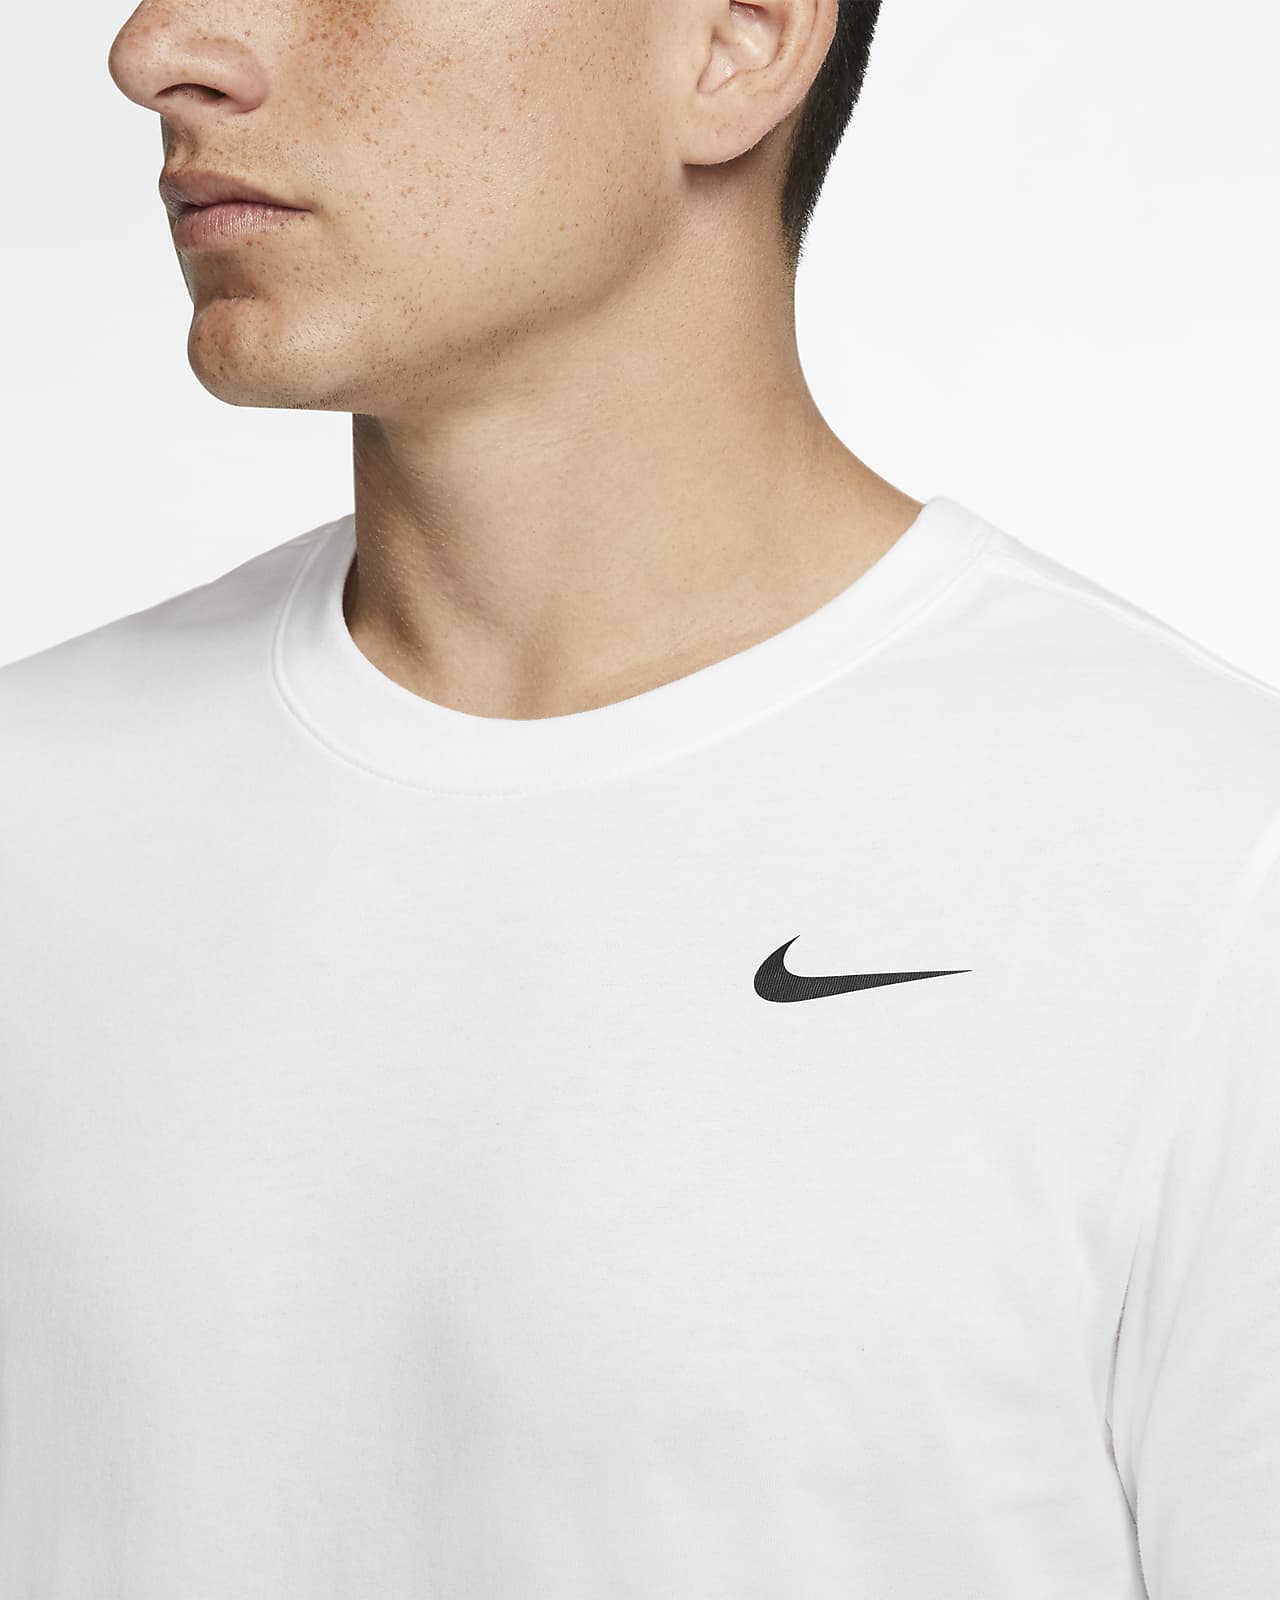 Mathis buste mængde af salg Nike Dri-FIT Men's Fitness T-Shirt. Nike NZ